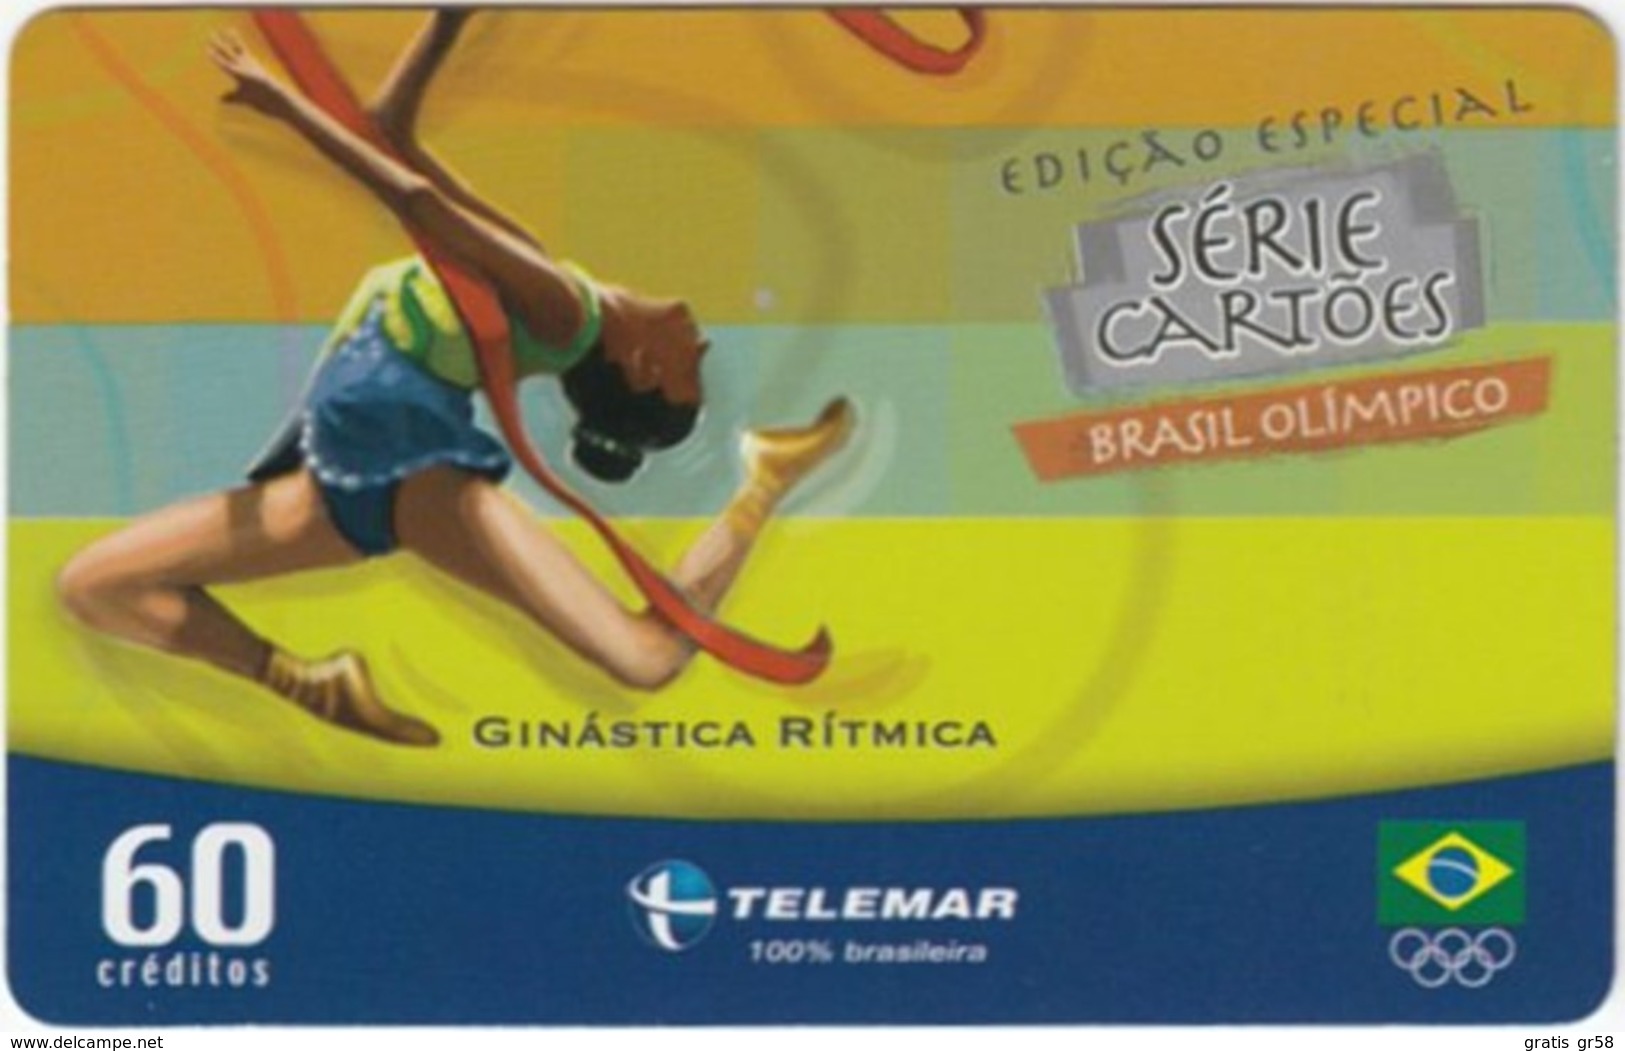 Brazil - BR-TLM-MG-2011, 06/34 - 0150, Event, Rhythm Gymnastics, 60U, 30,960ex, 4/04, Used - Jeux Olympiques